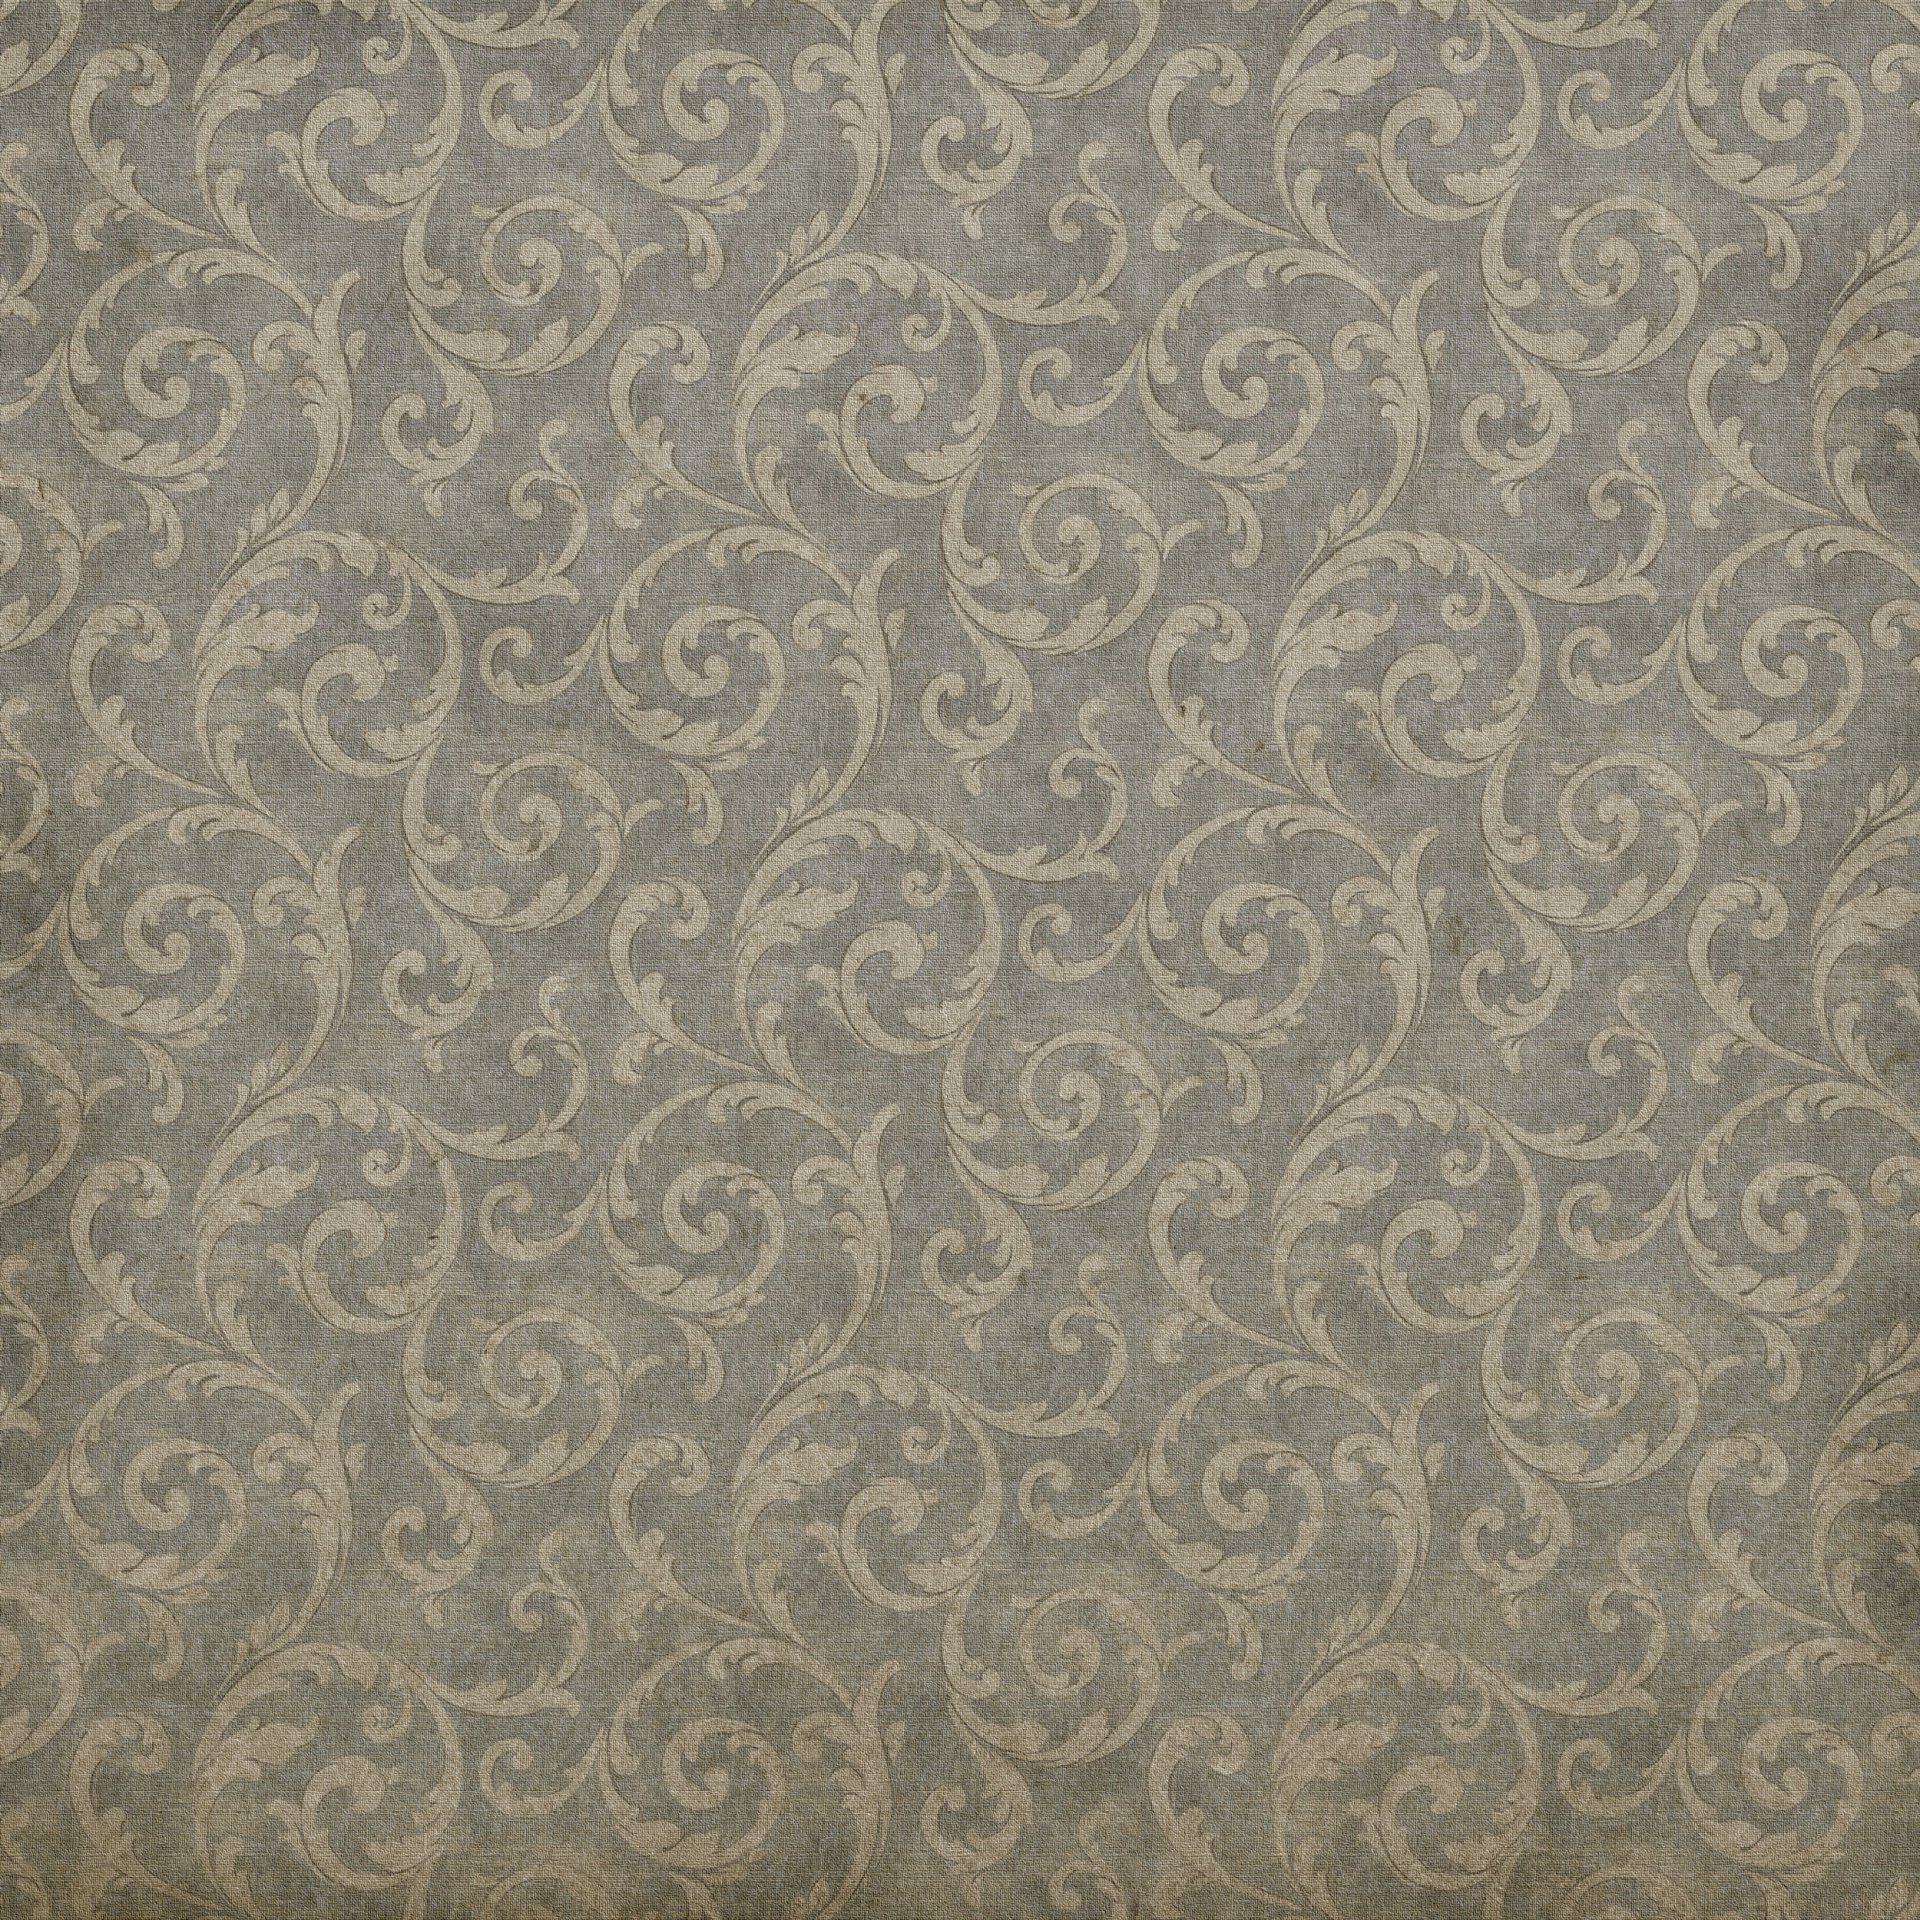 desktop wallpaper patterns vintage